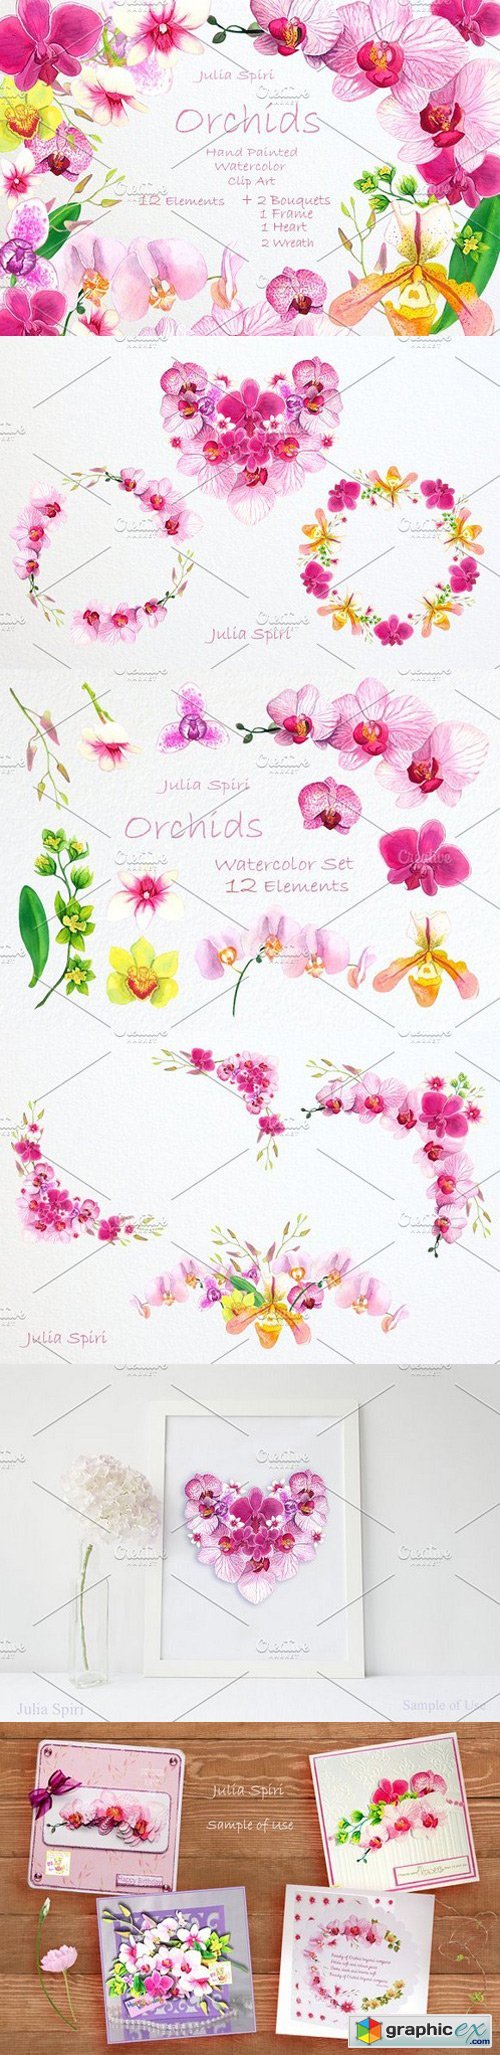 Orchids Watercolor Clip Art